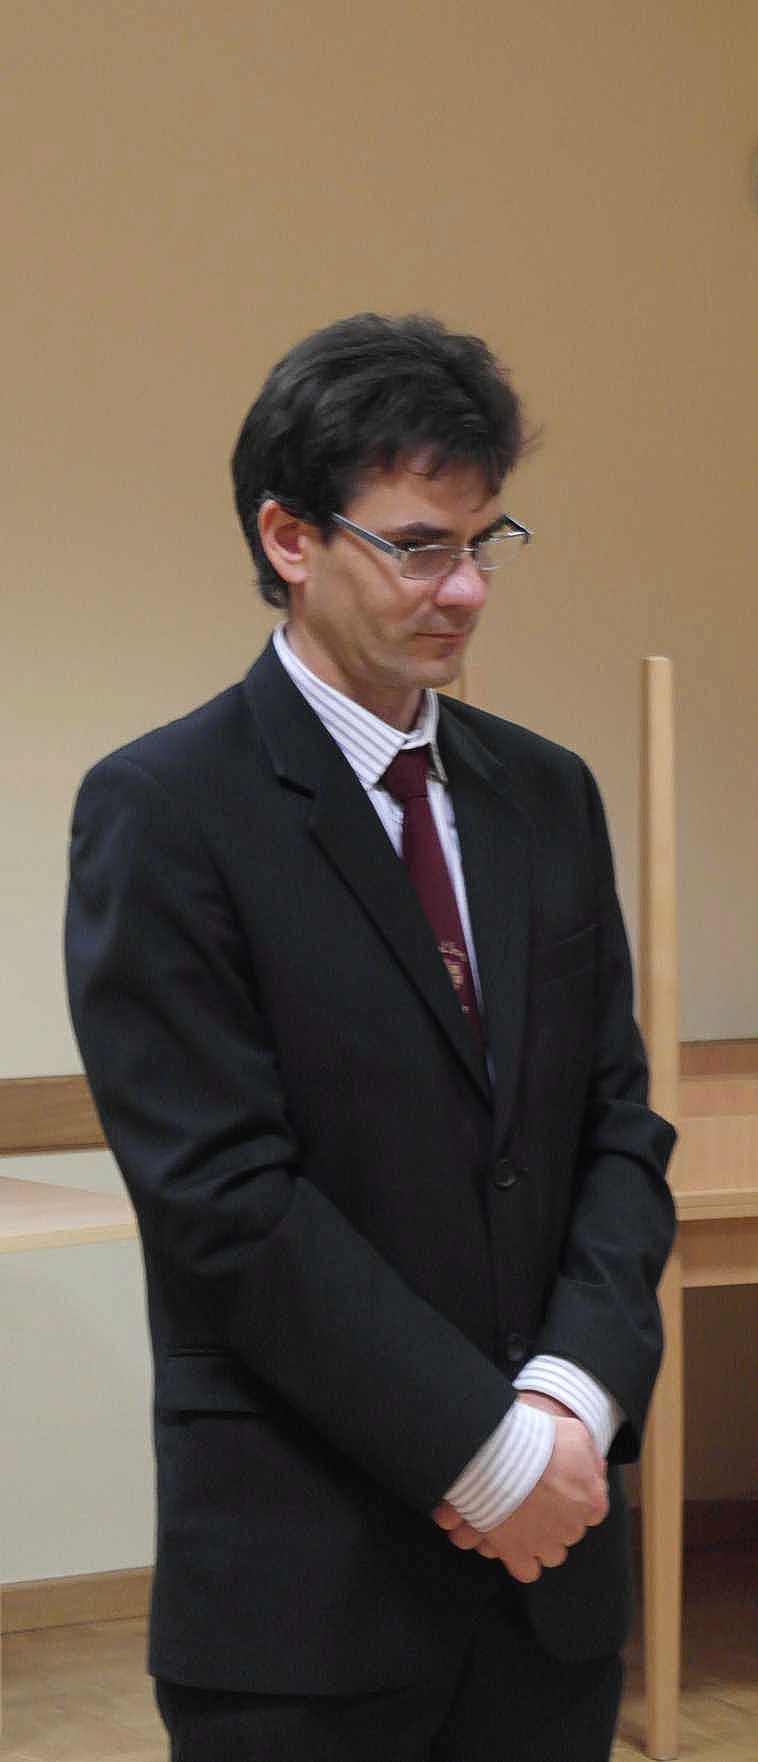 Romhányi Péter, a Szent Imre Római Katolikus Iskola és Óvoda igazgatója